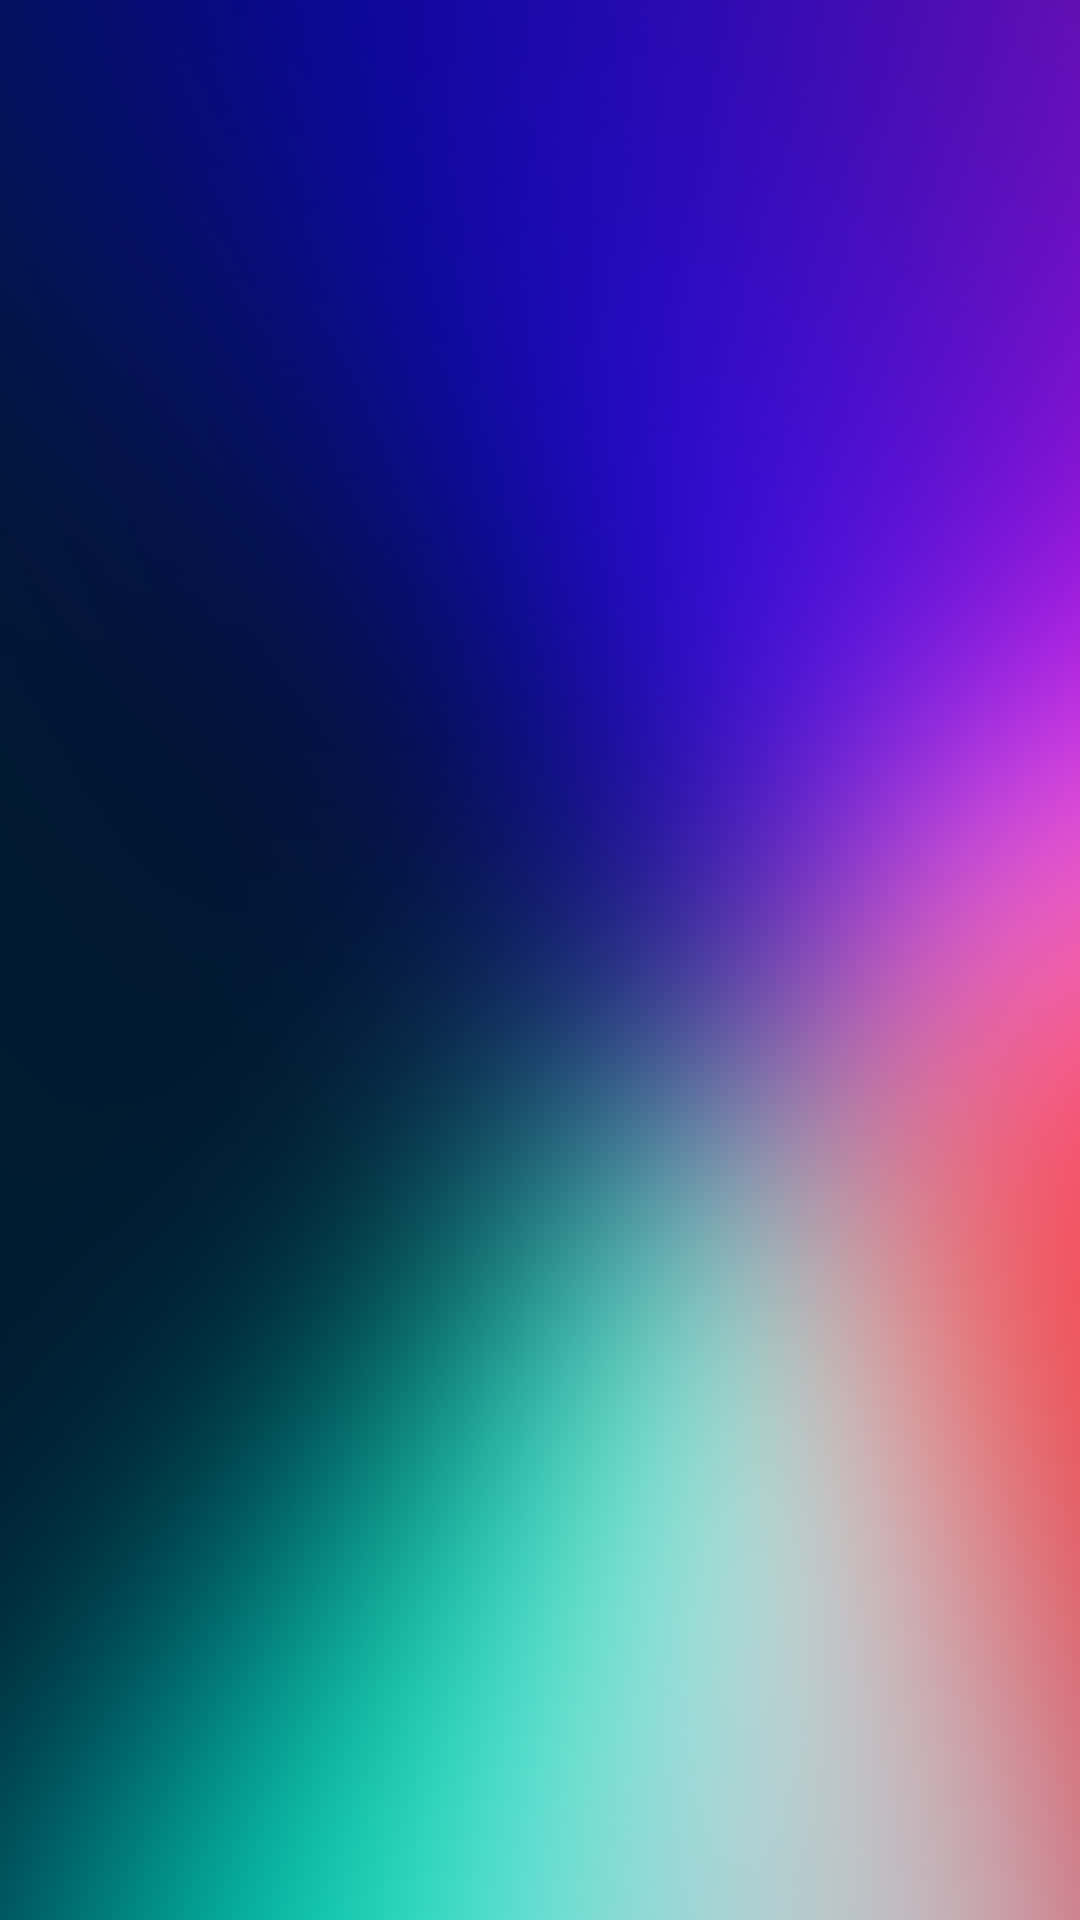 Unfondo Borroso Con Un Color Azul, Rojo Y Azul Fondo de pantalla